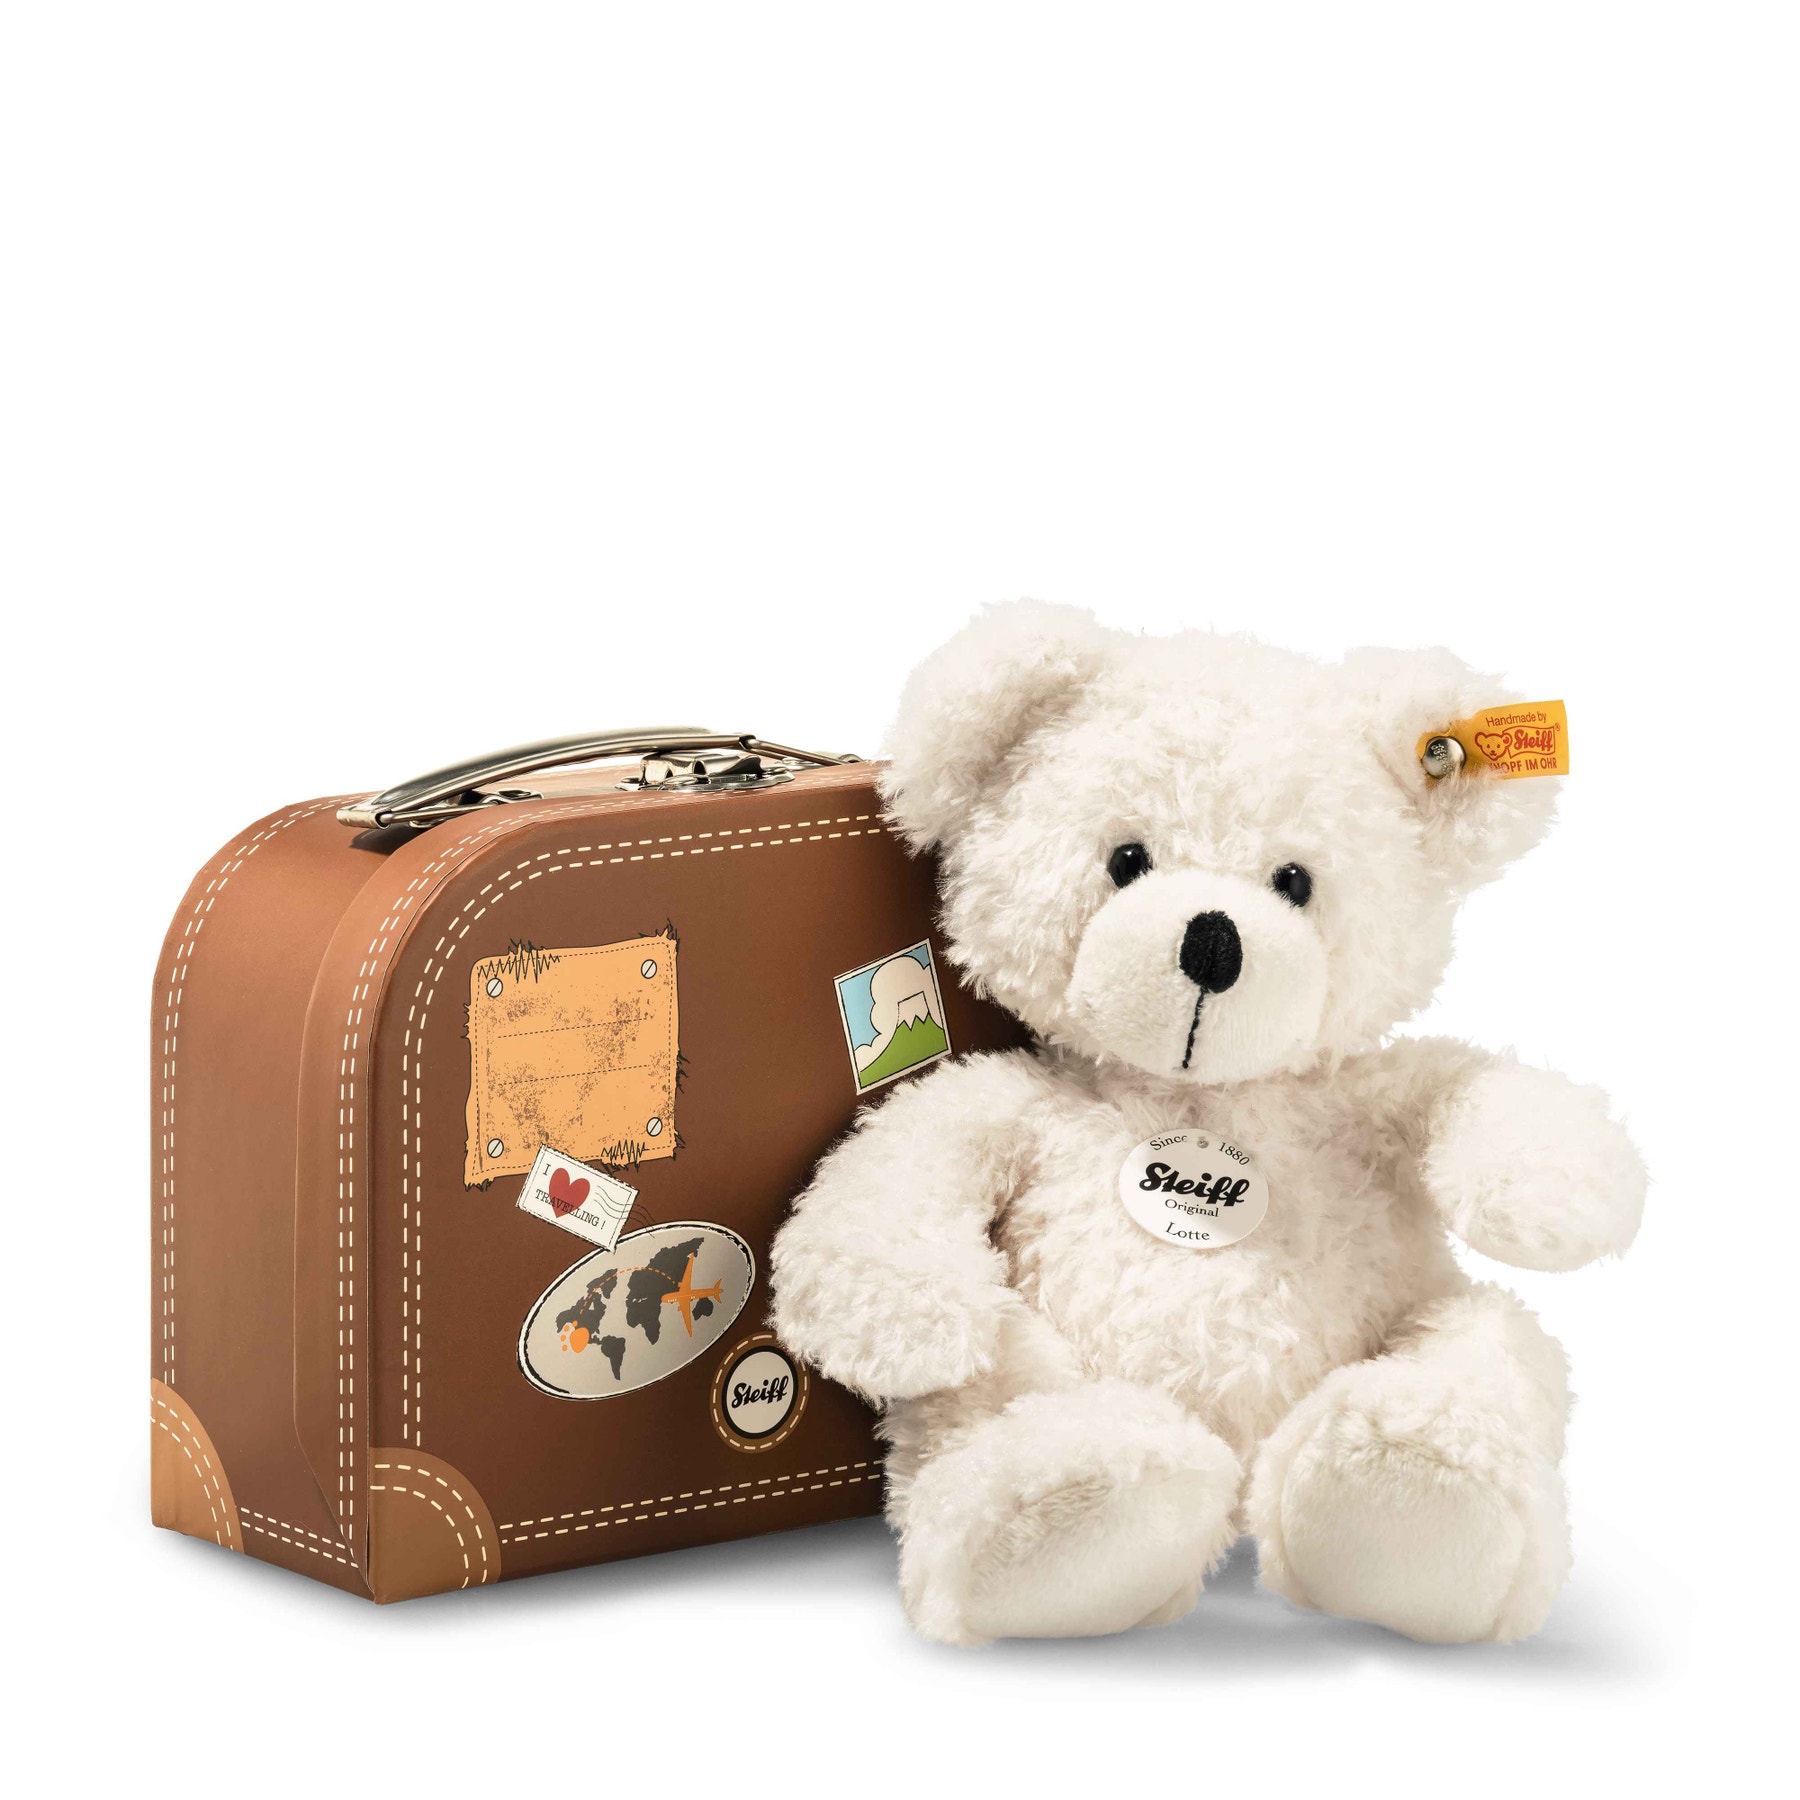 Lotte Teddy bear in suitcase